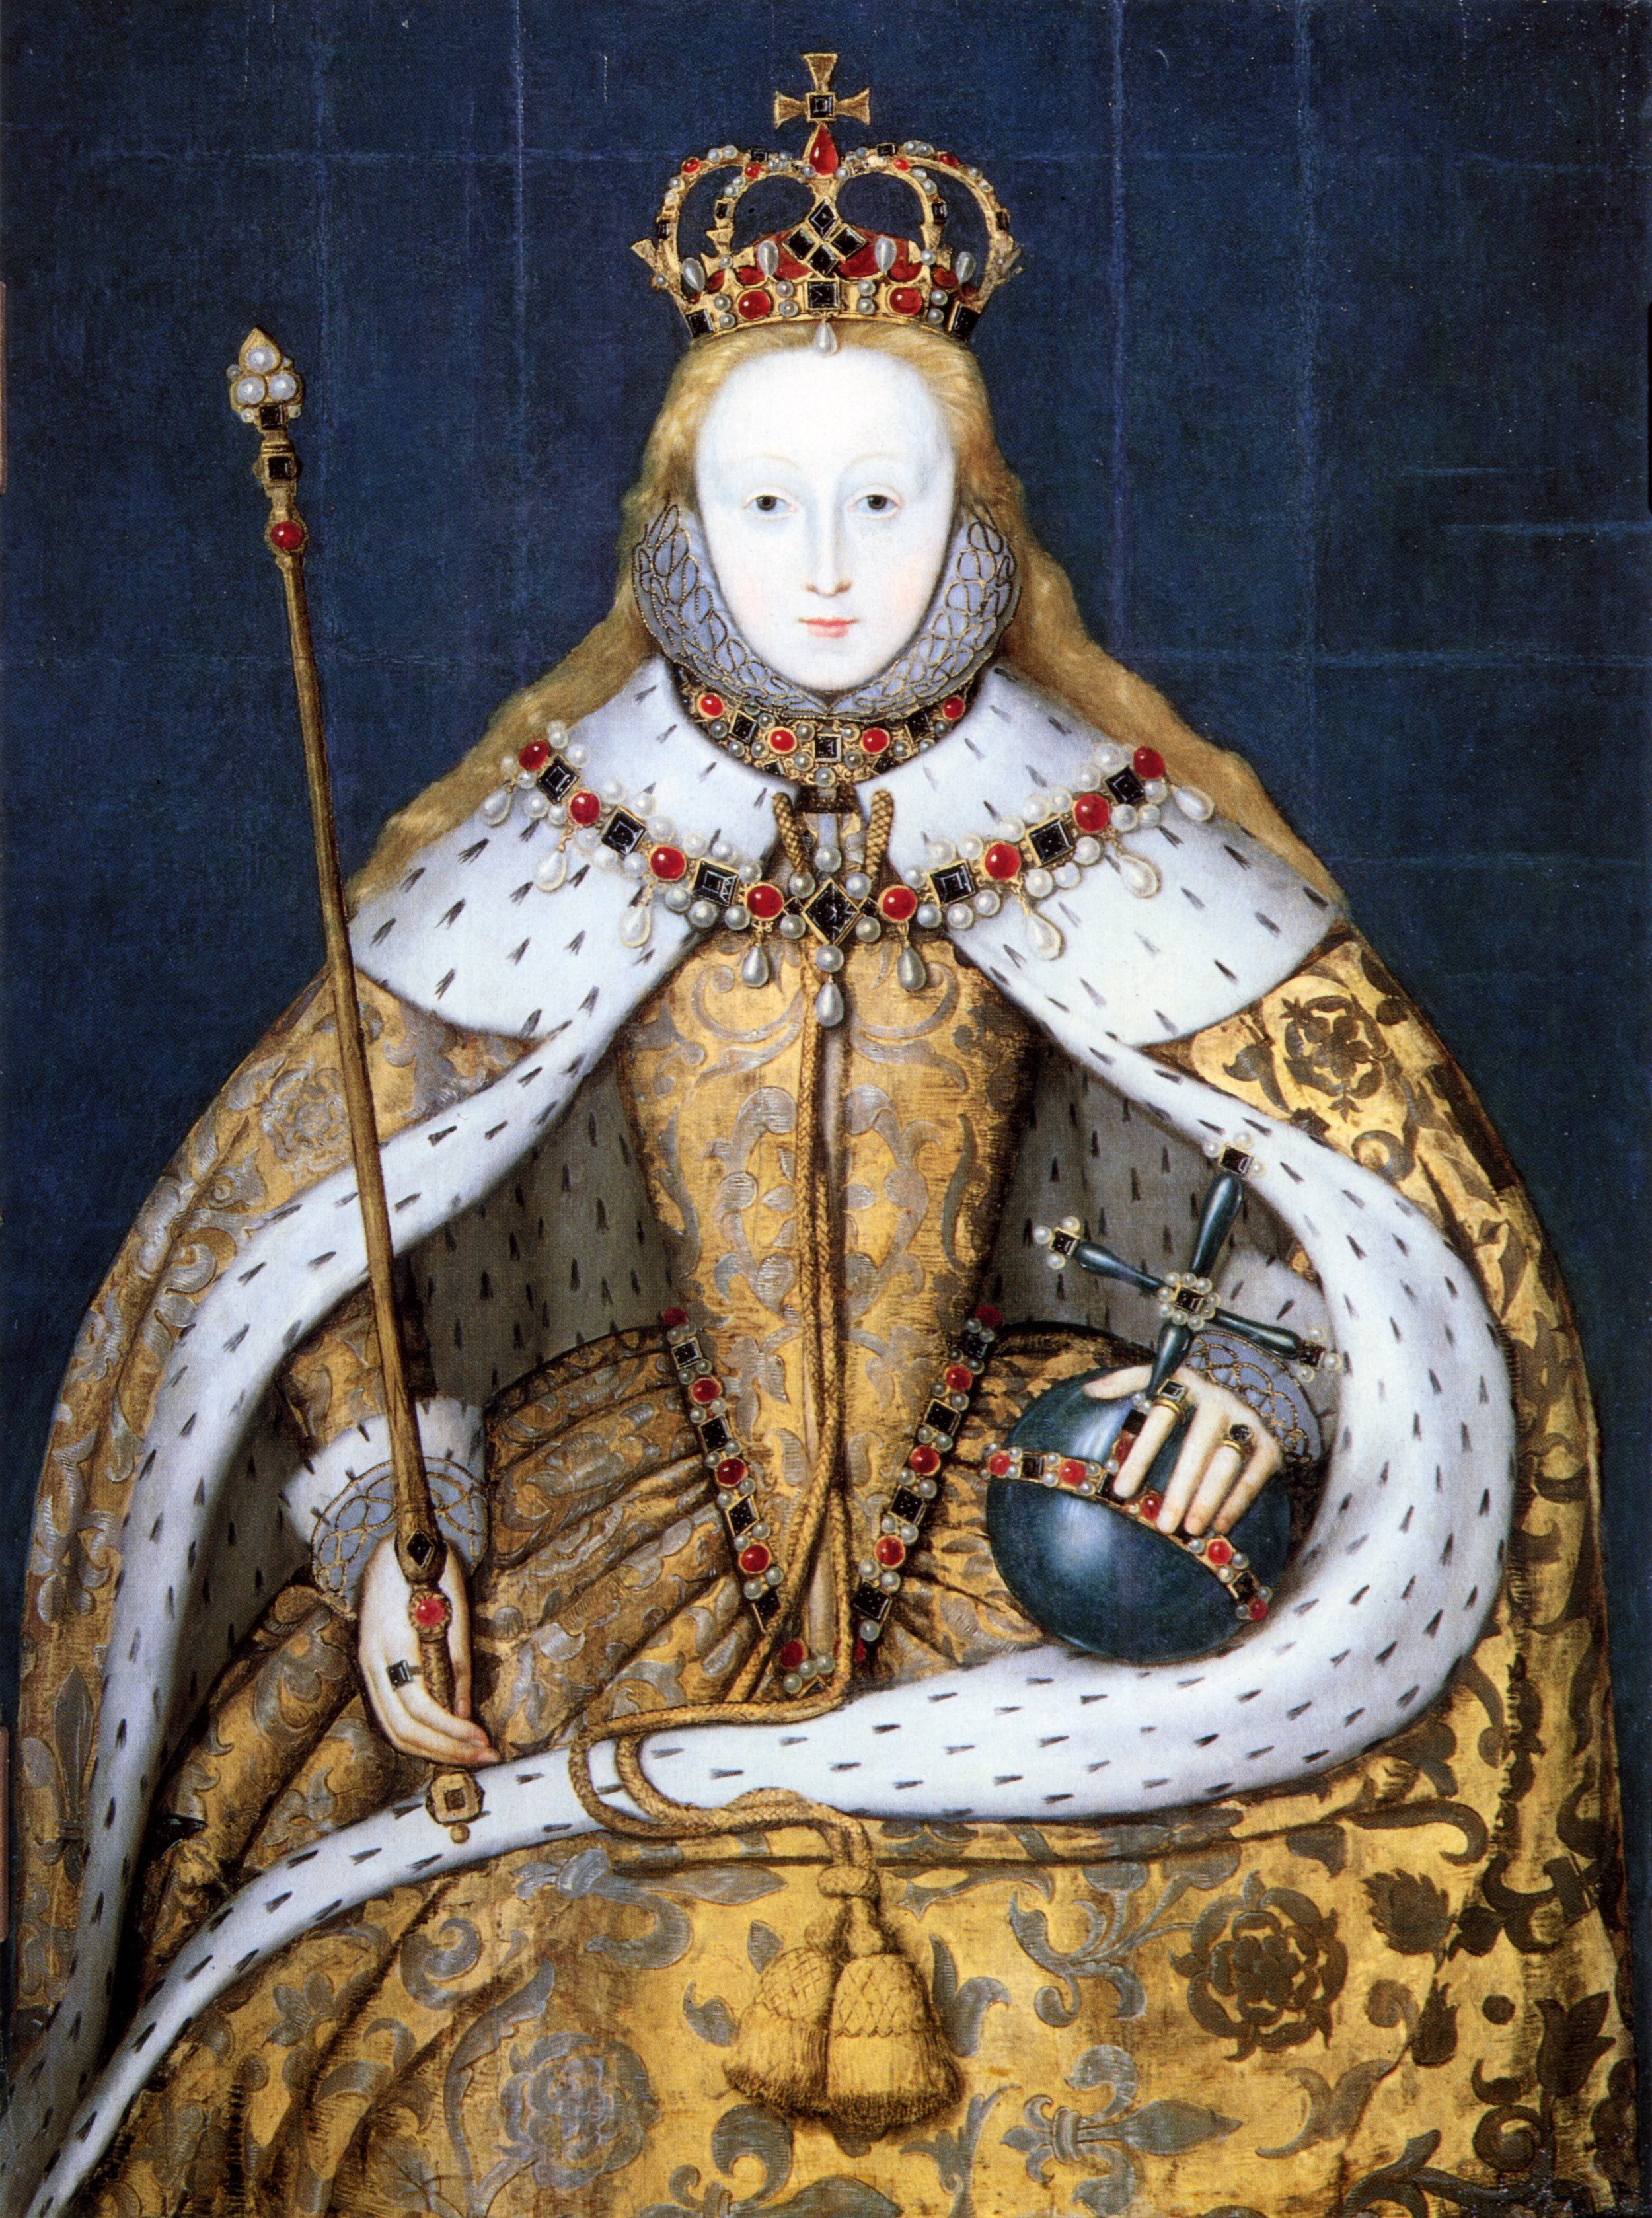 Queen Elizabeth I in coronation robes